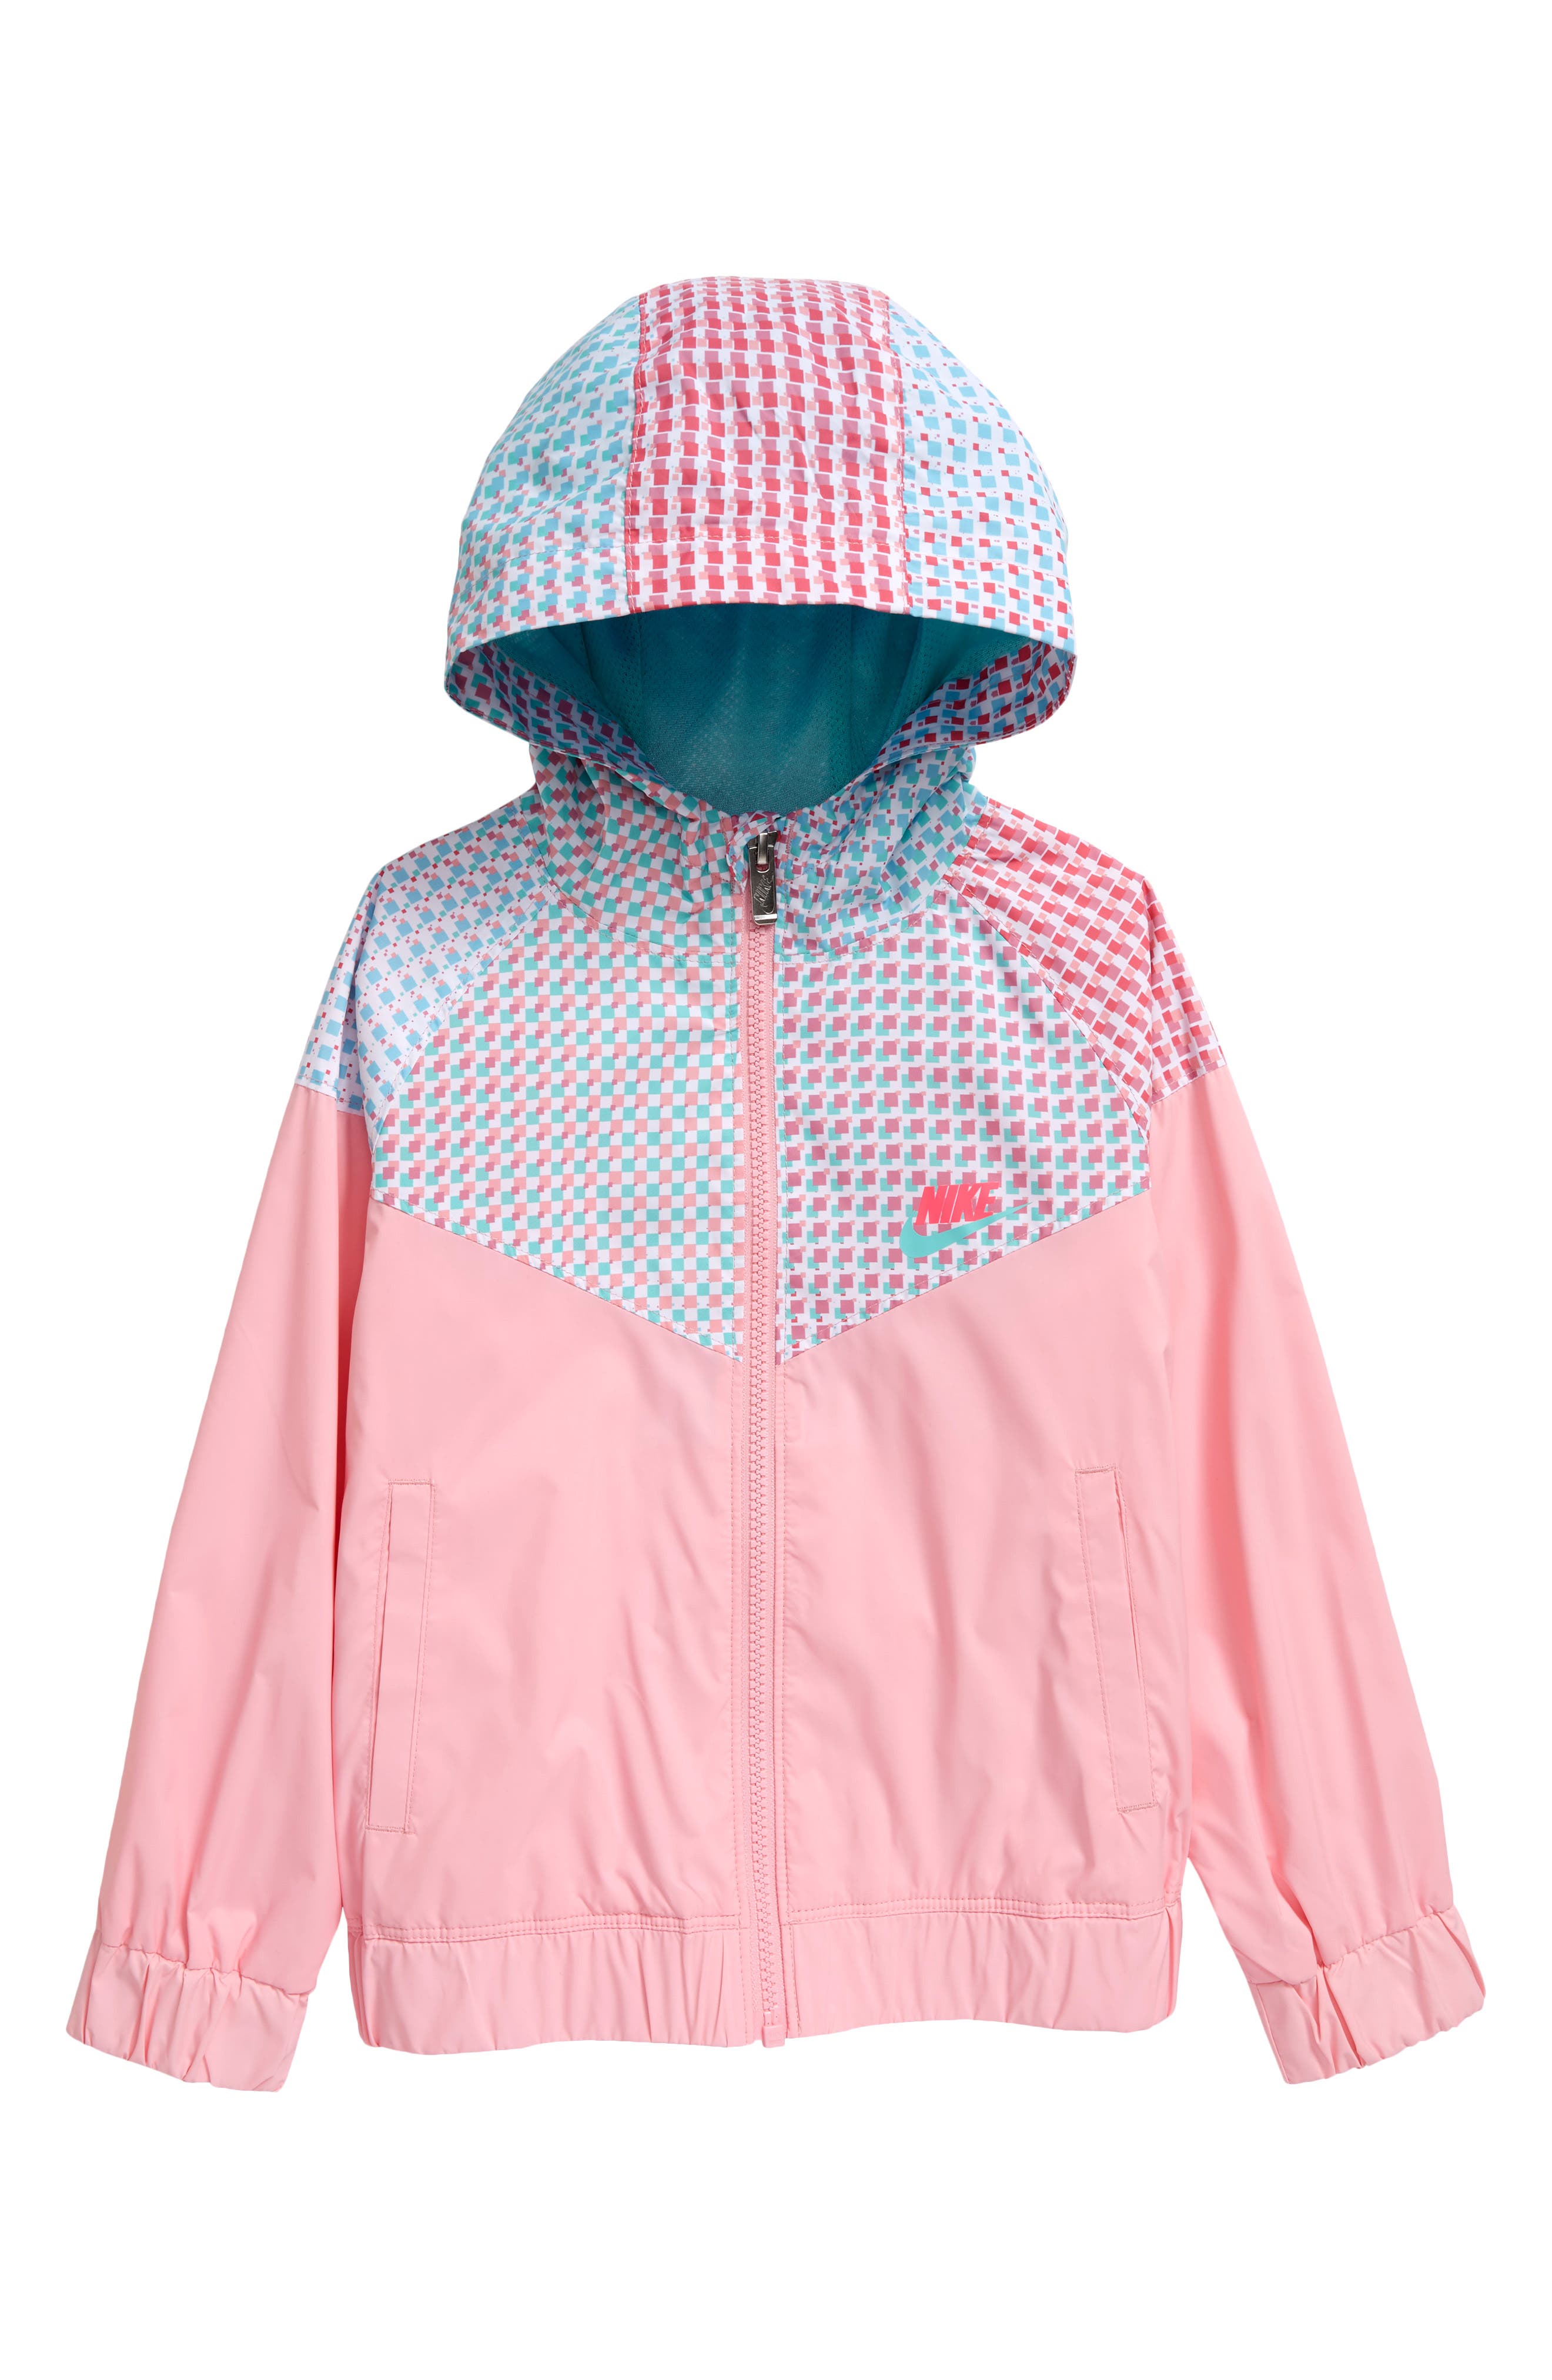 nike toddler rain jacket